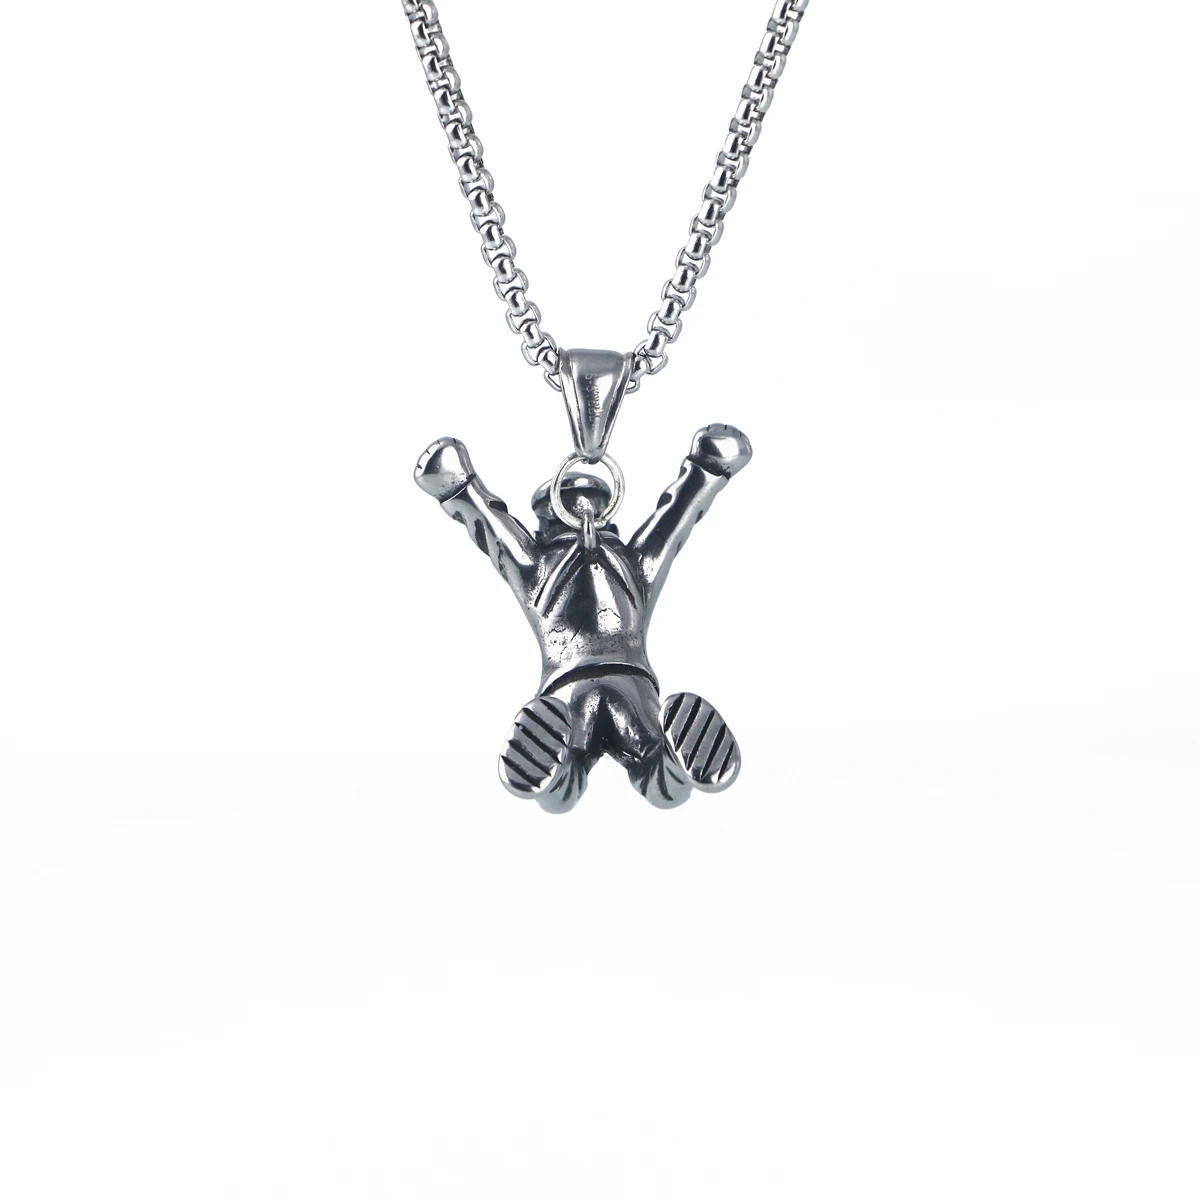 Amgj нержавеющая сталь спортивные фитнес-ожерелья для мужчин панк-рок Скайдайвинг кулон ожерелье вечерние хип-хоп ювелирные изделия